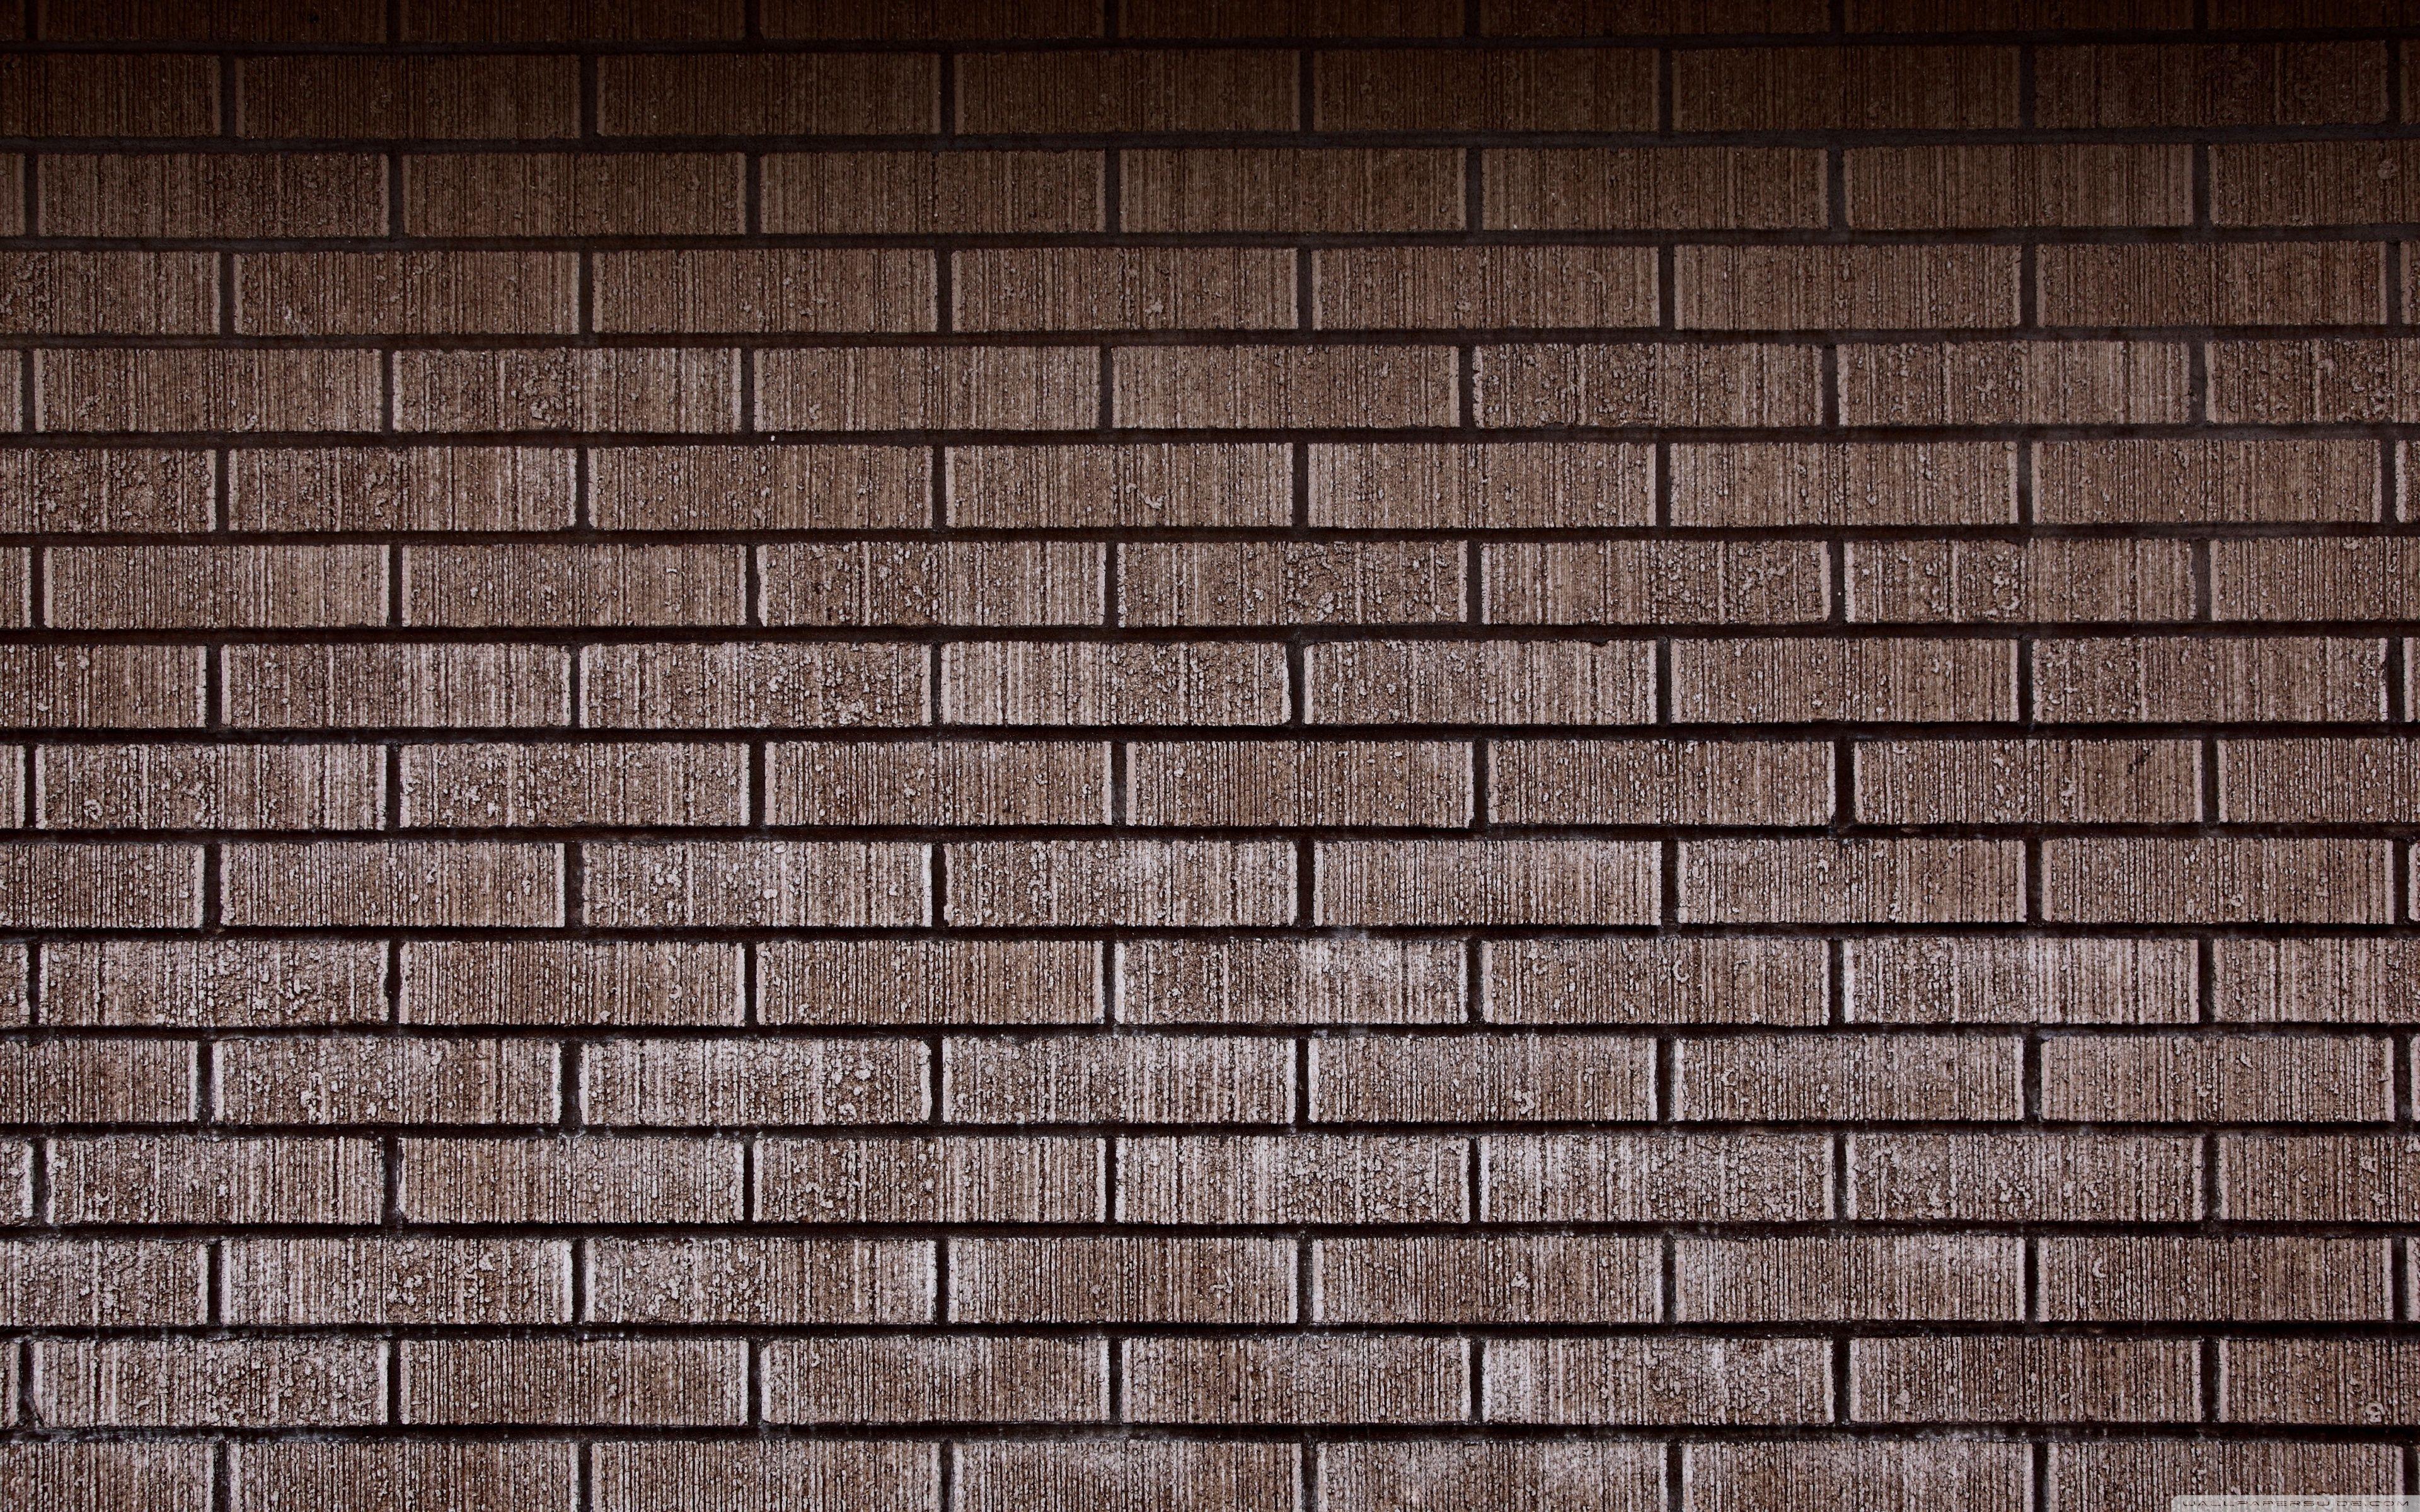 Brick Walls Wallpapers - Wallpaper Cave